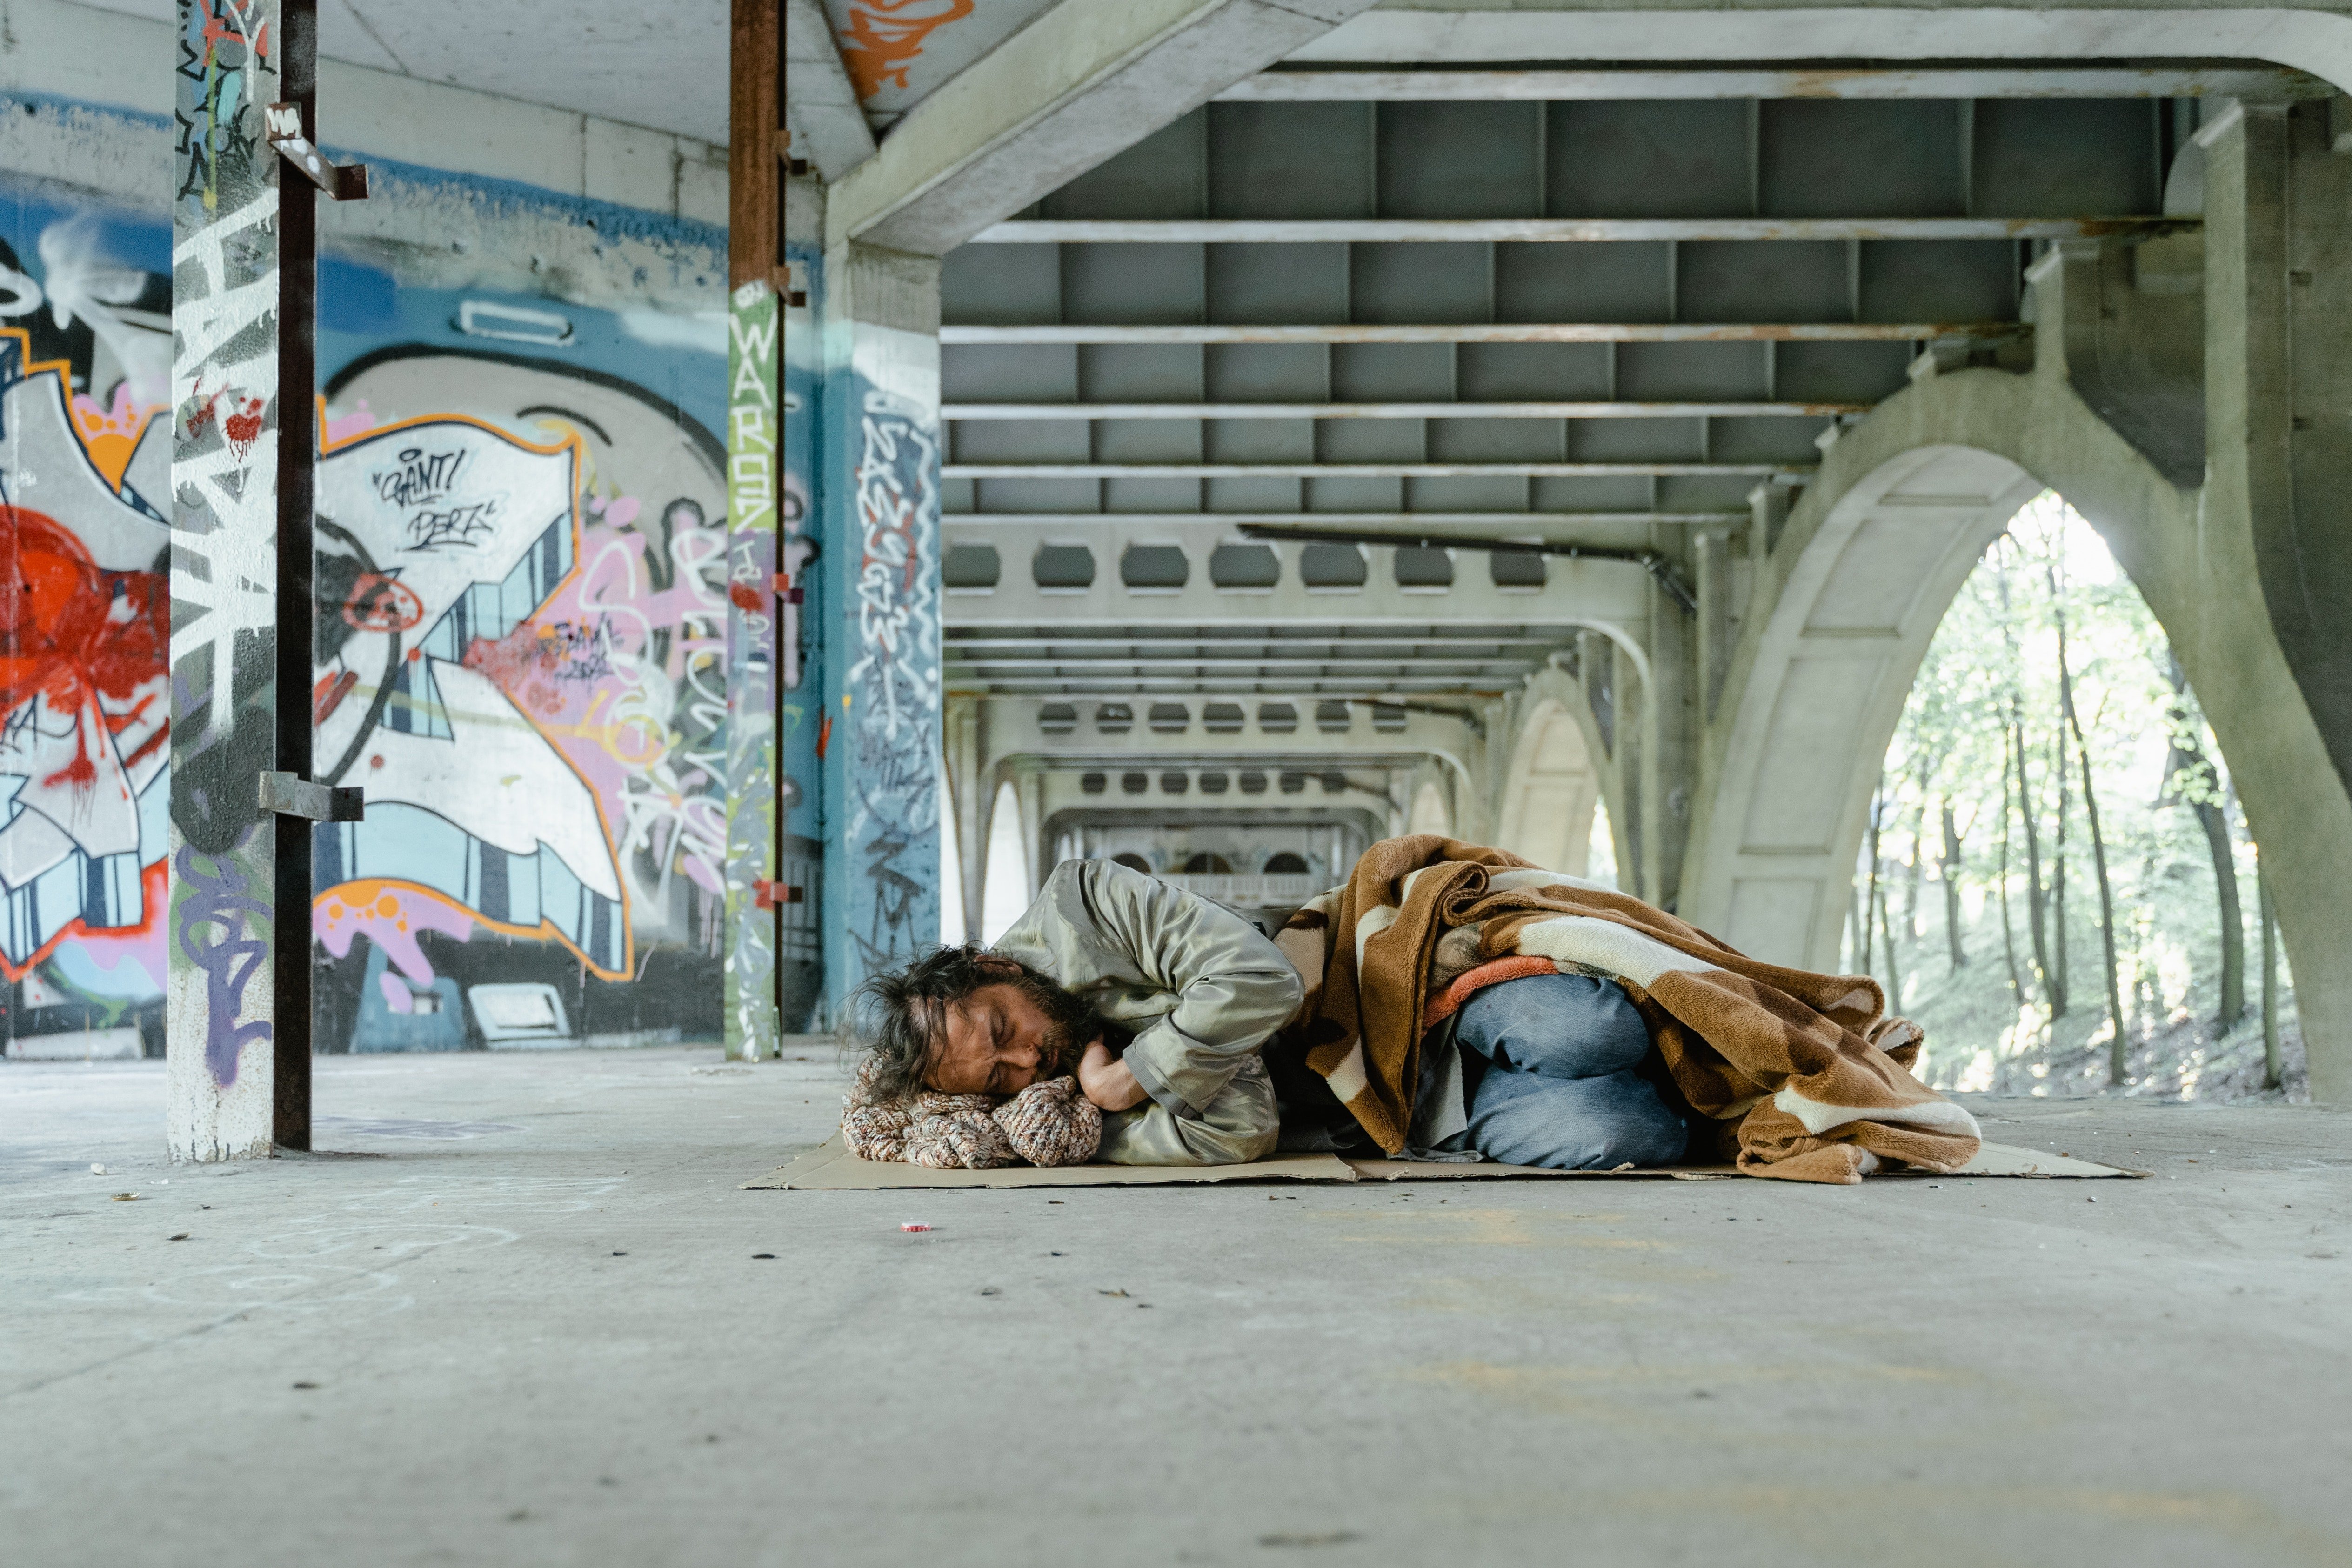 Anke brachte ihren Sohn zu einer nahe gelegenen Brücke, wo sie nach einem Obdachlosen rief. | Quelle: Pexels